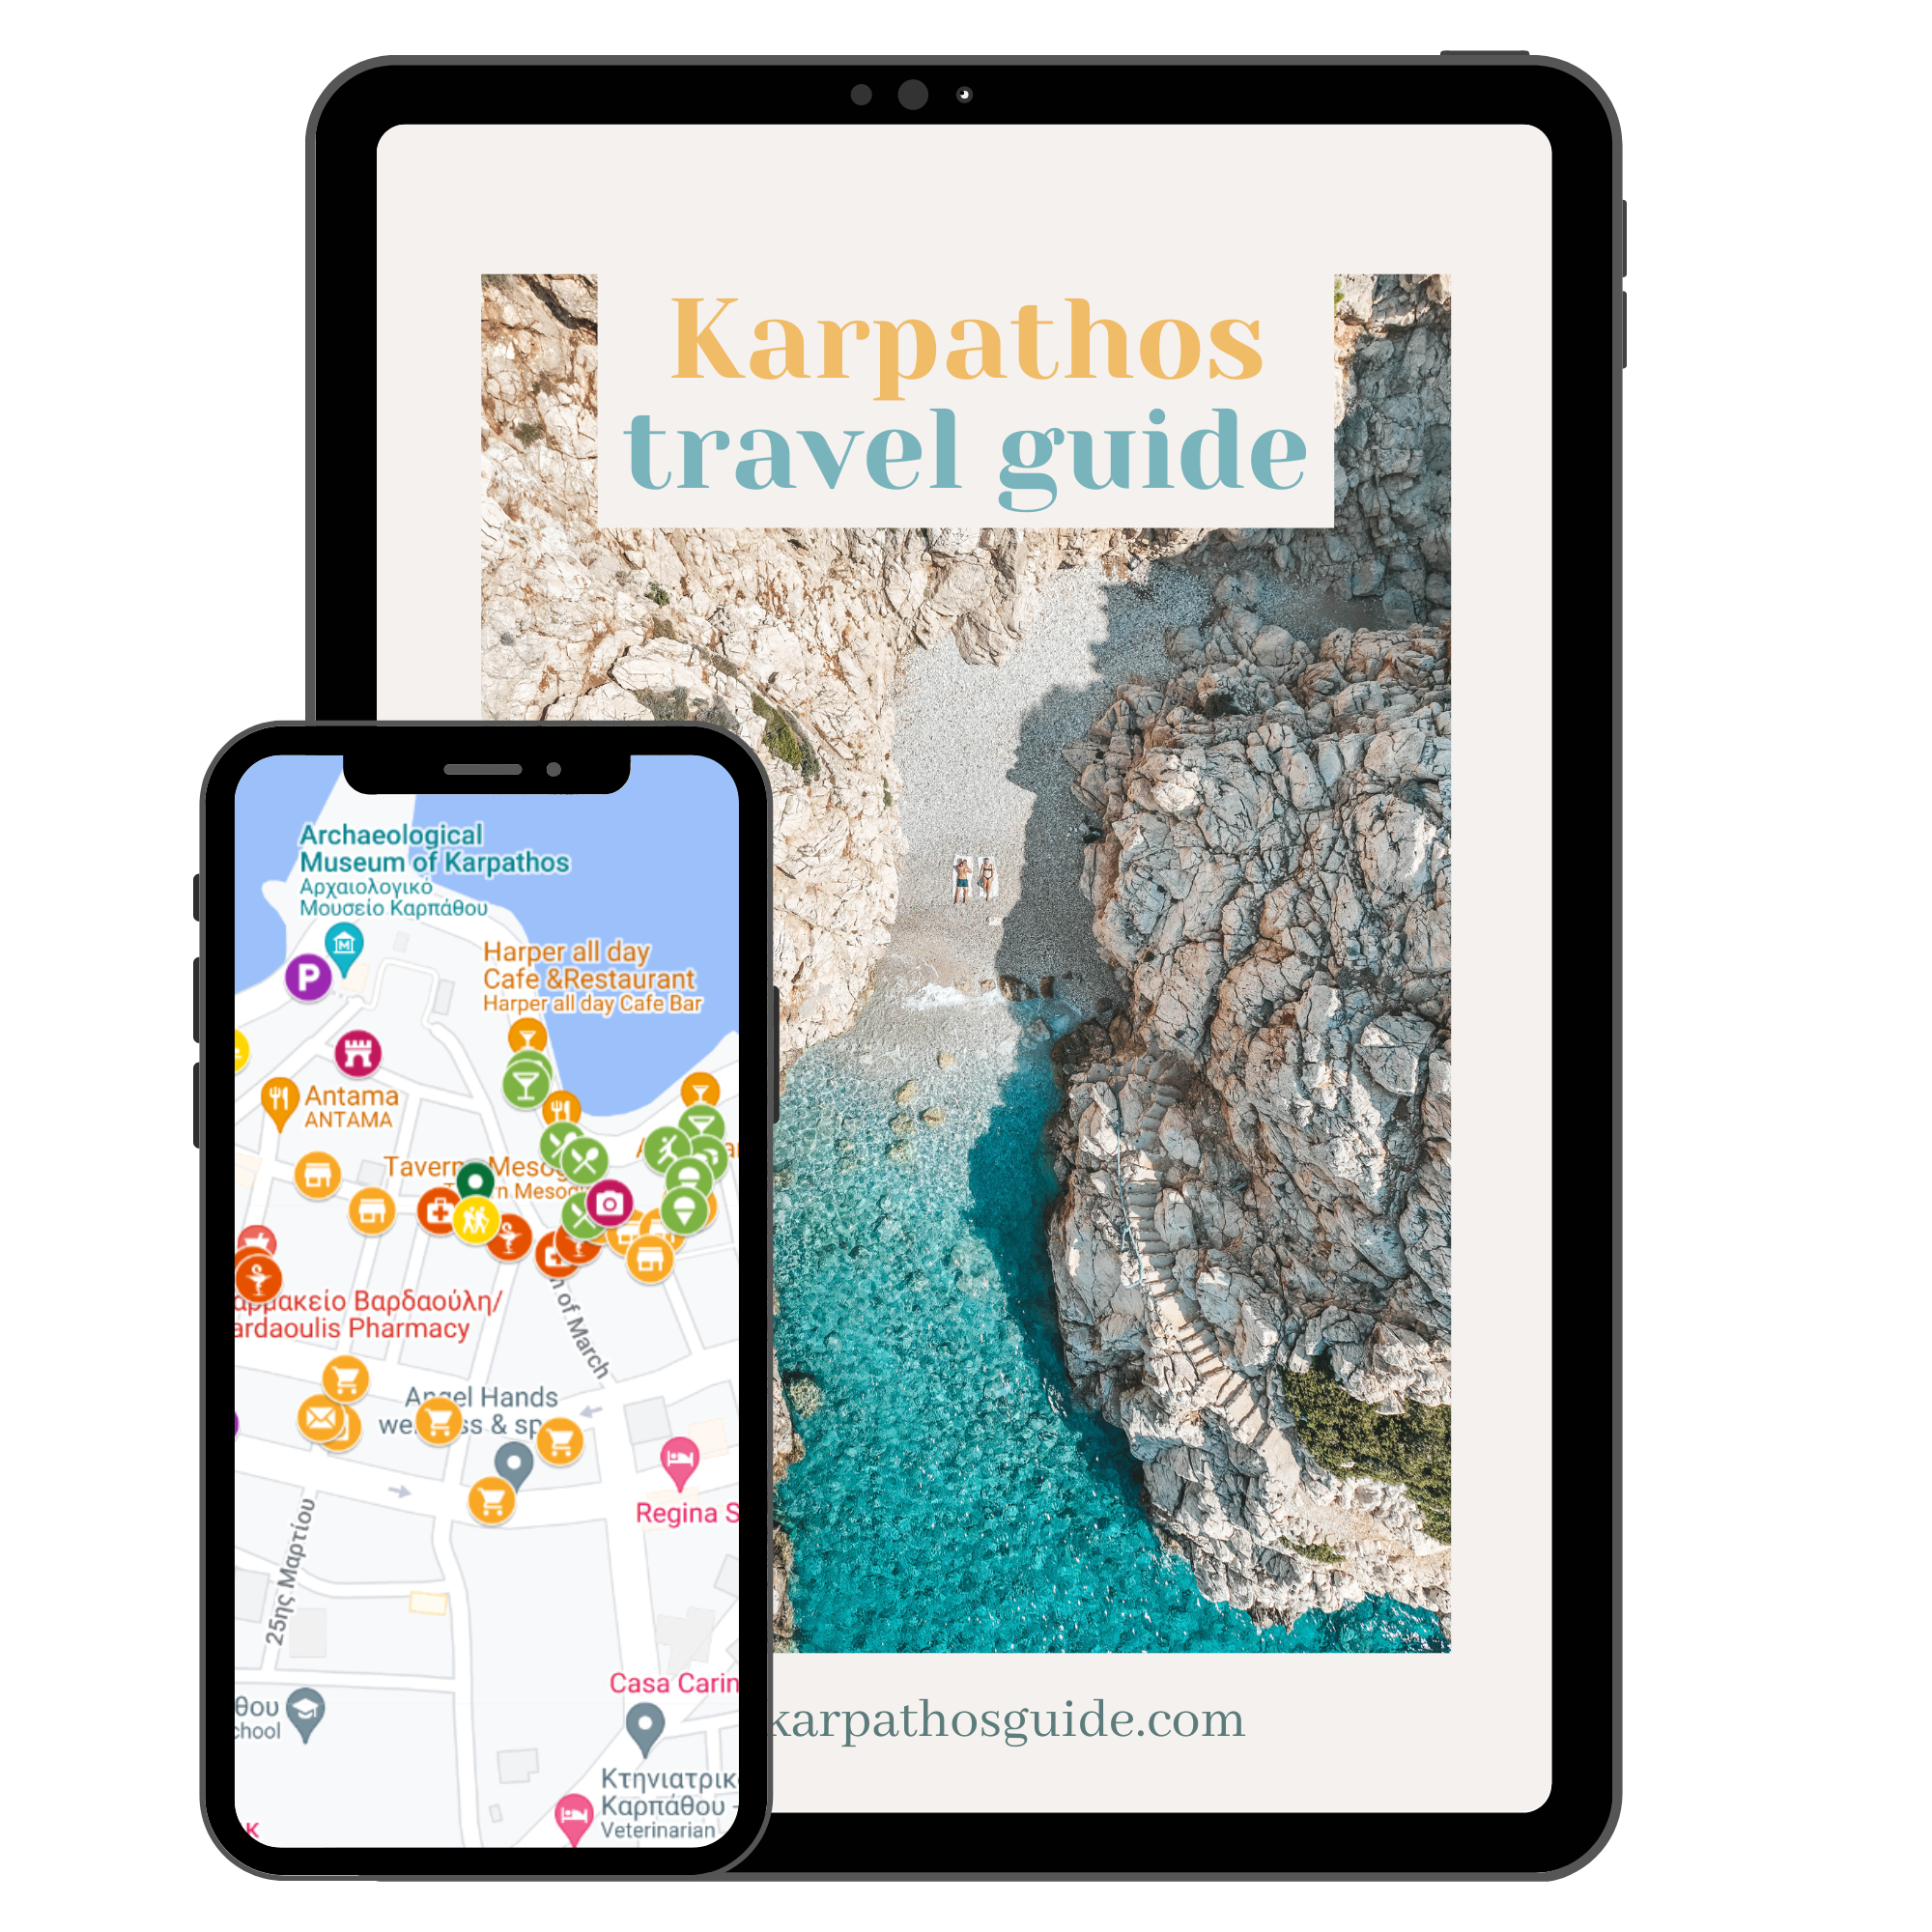 Karpathos travel guide English